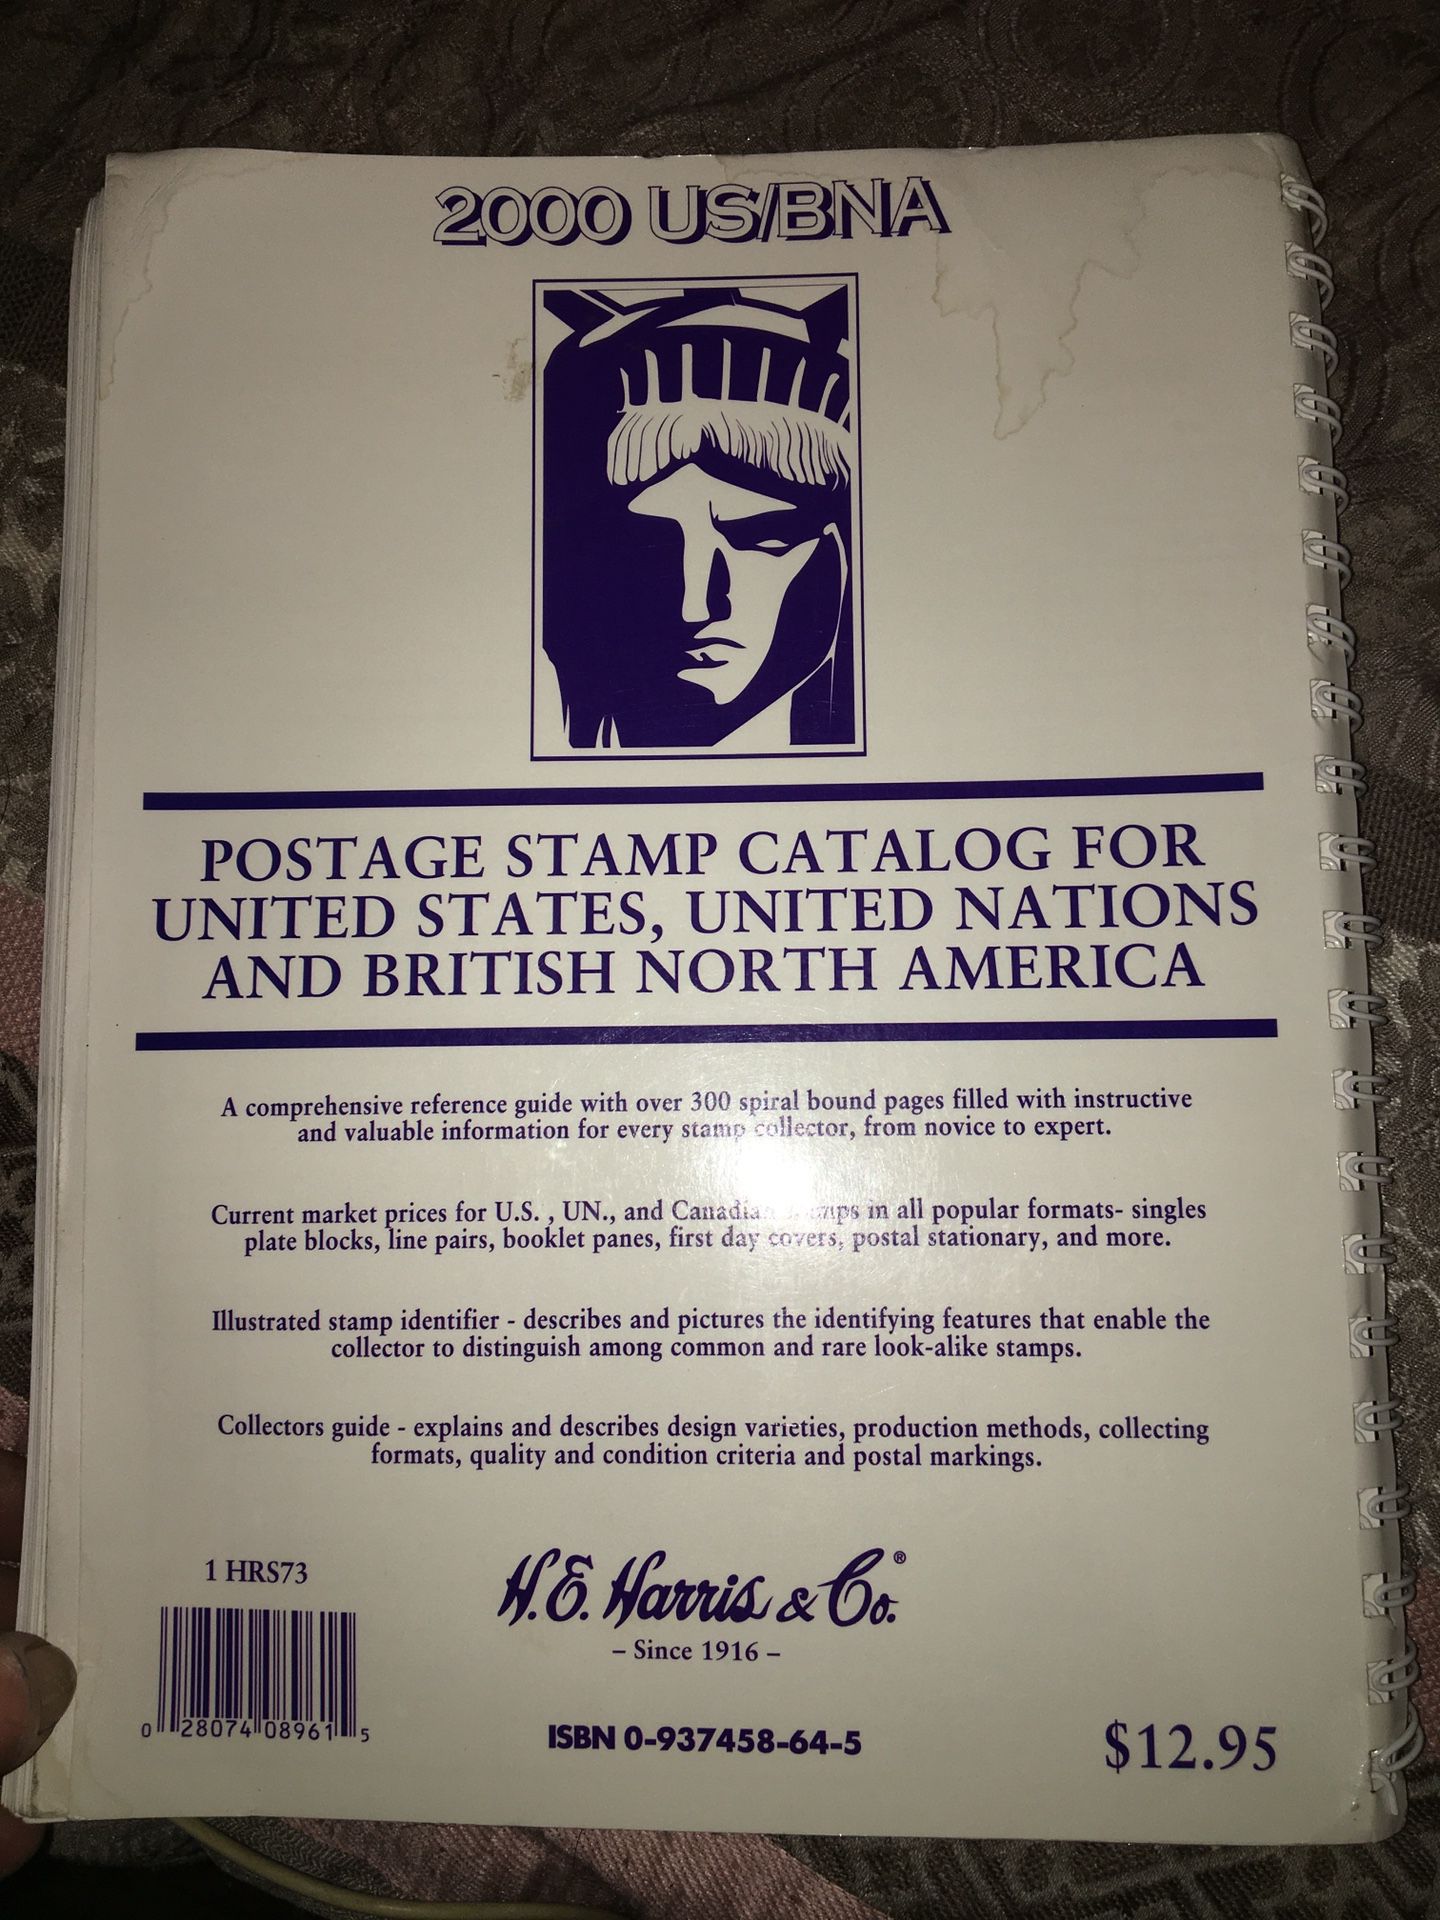 2000 US/BNA Postage Stamp Catalog